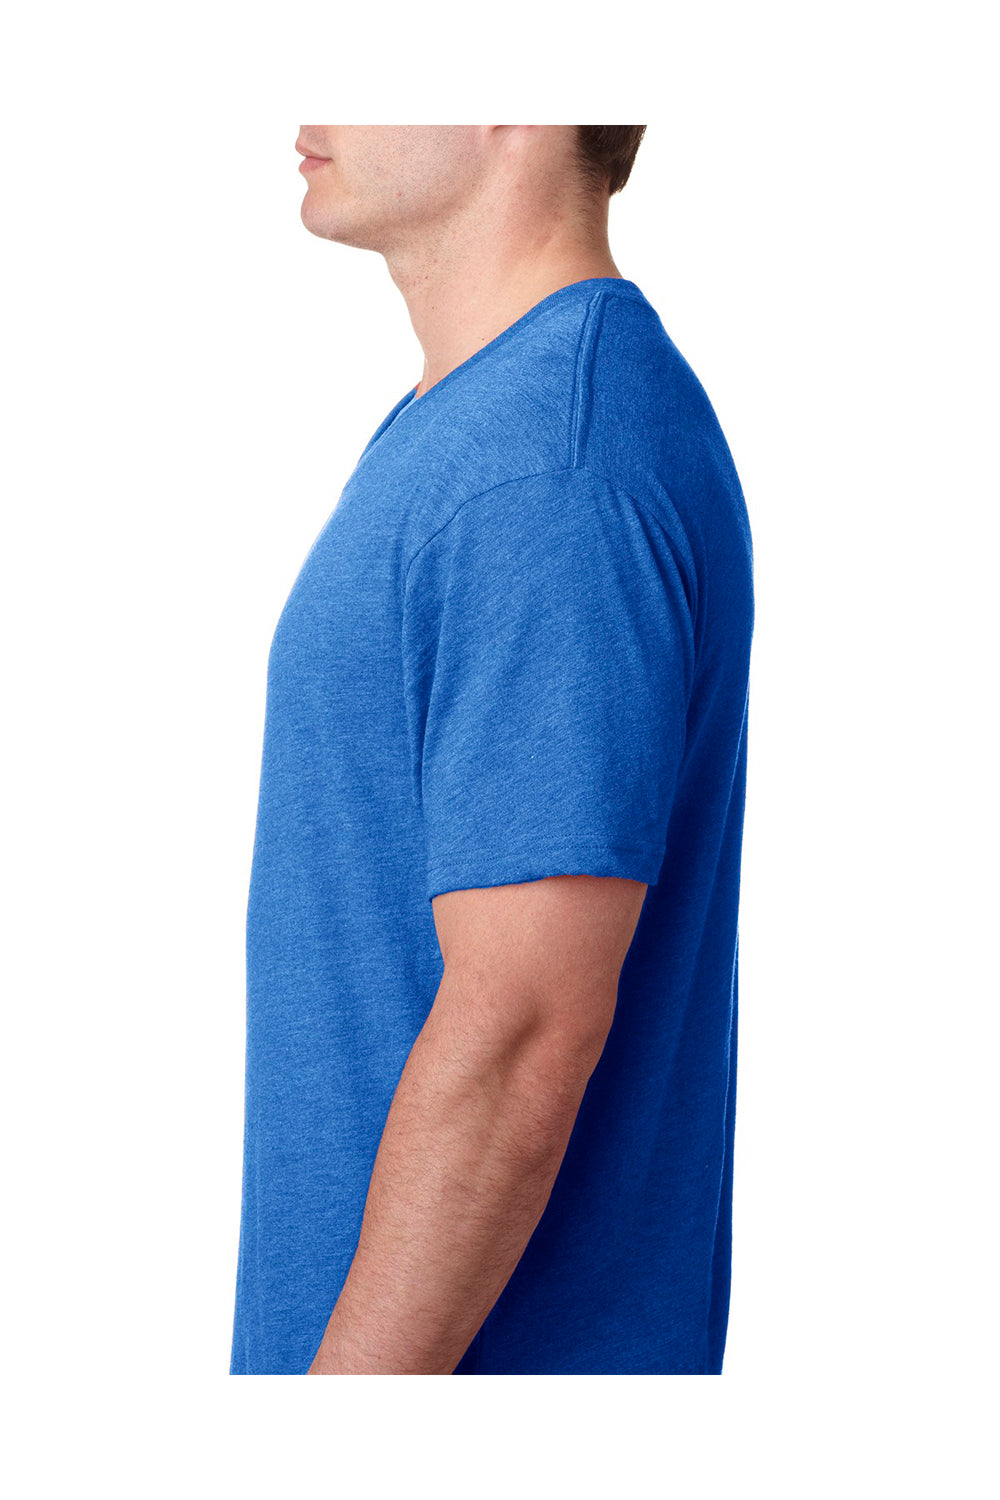 Next Level 6040 Mens Jersey Short Sleeve V-Neck T-Shirt Royal Blue Side